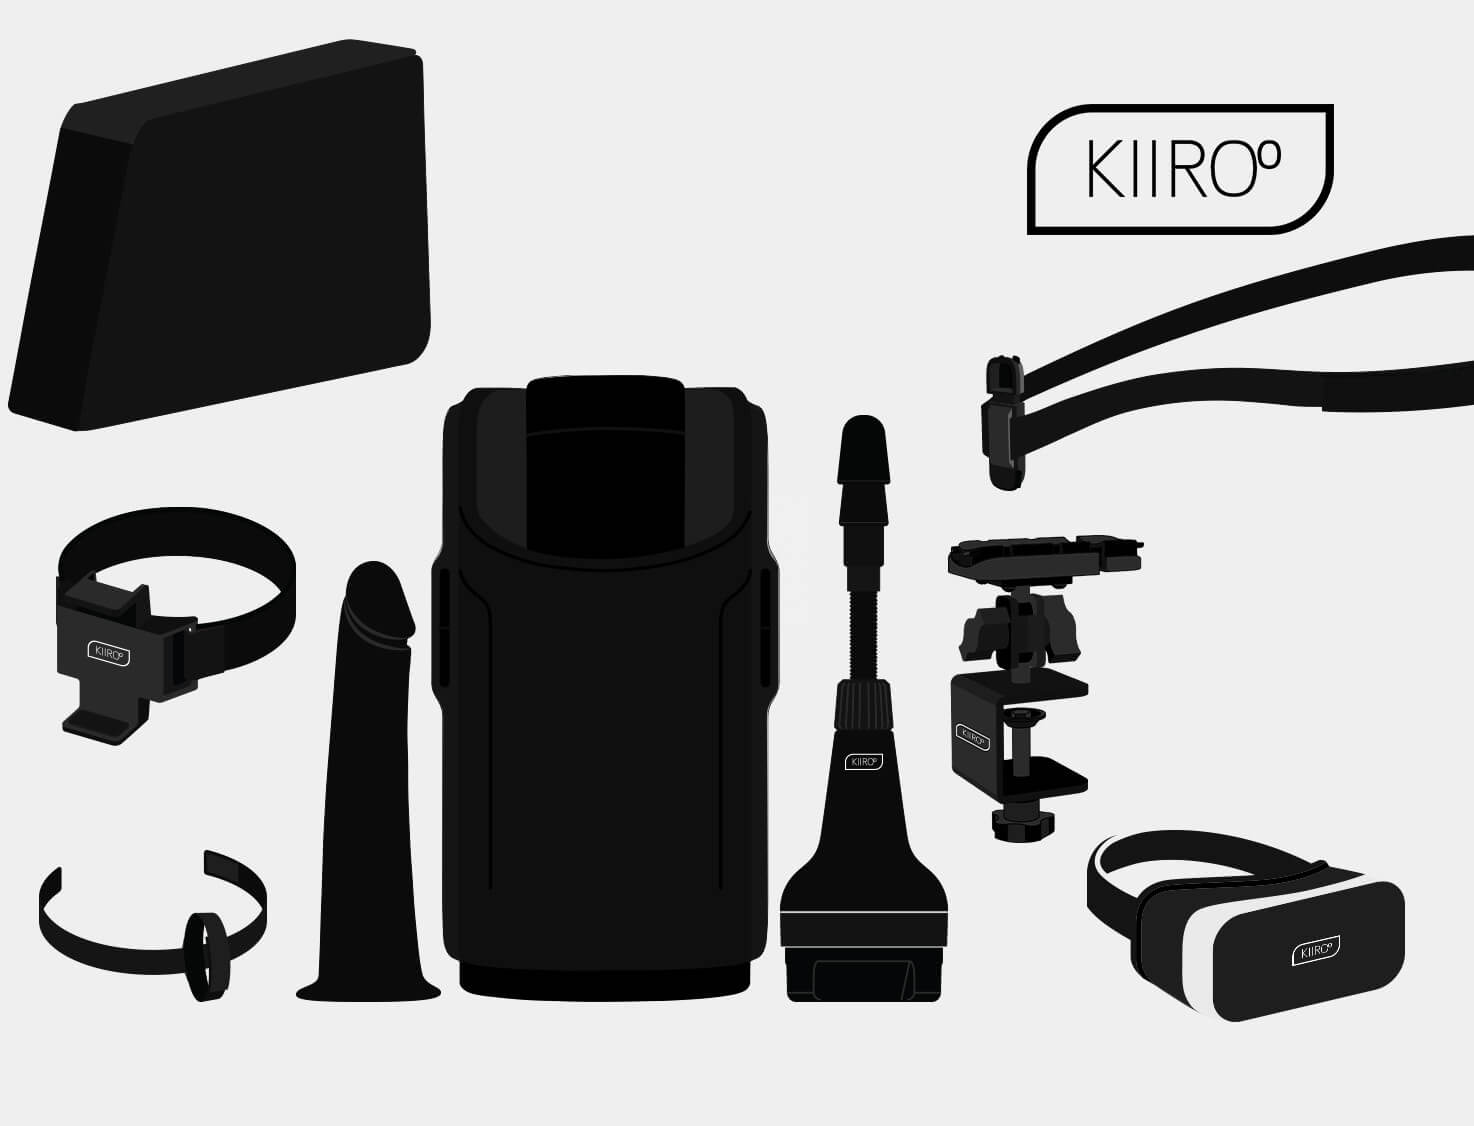 Fun ways to use the Keon Accessories Kiiroo